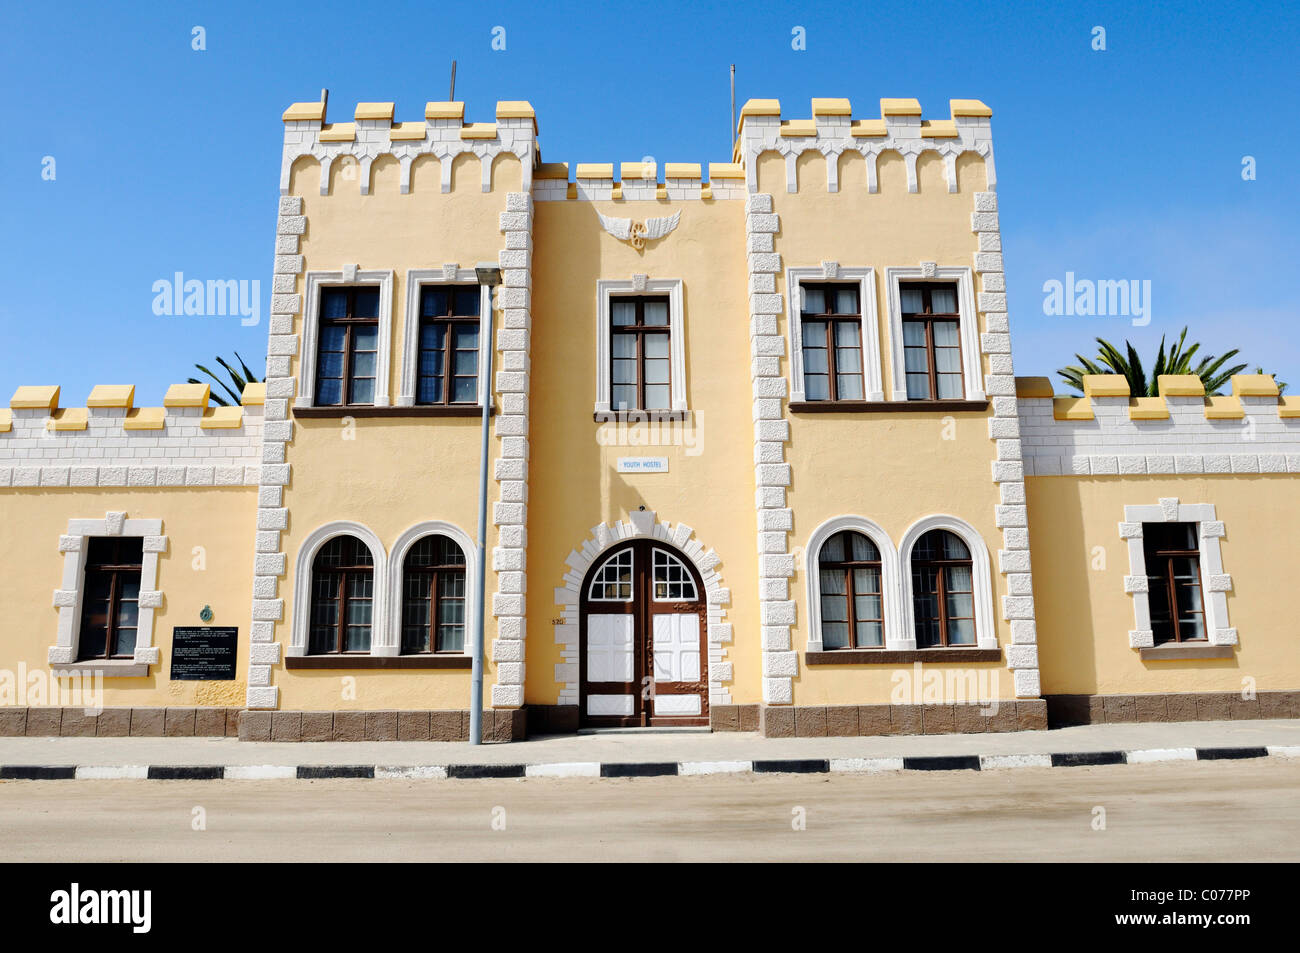 Alte Kaserne, Architektur aus der deutschen Kolonialzeit, jetzt Hostel, Swakopmund, Erongo Region, Namibia, Afrika Stockfoto